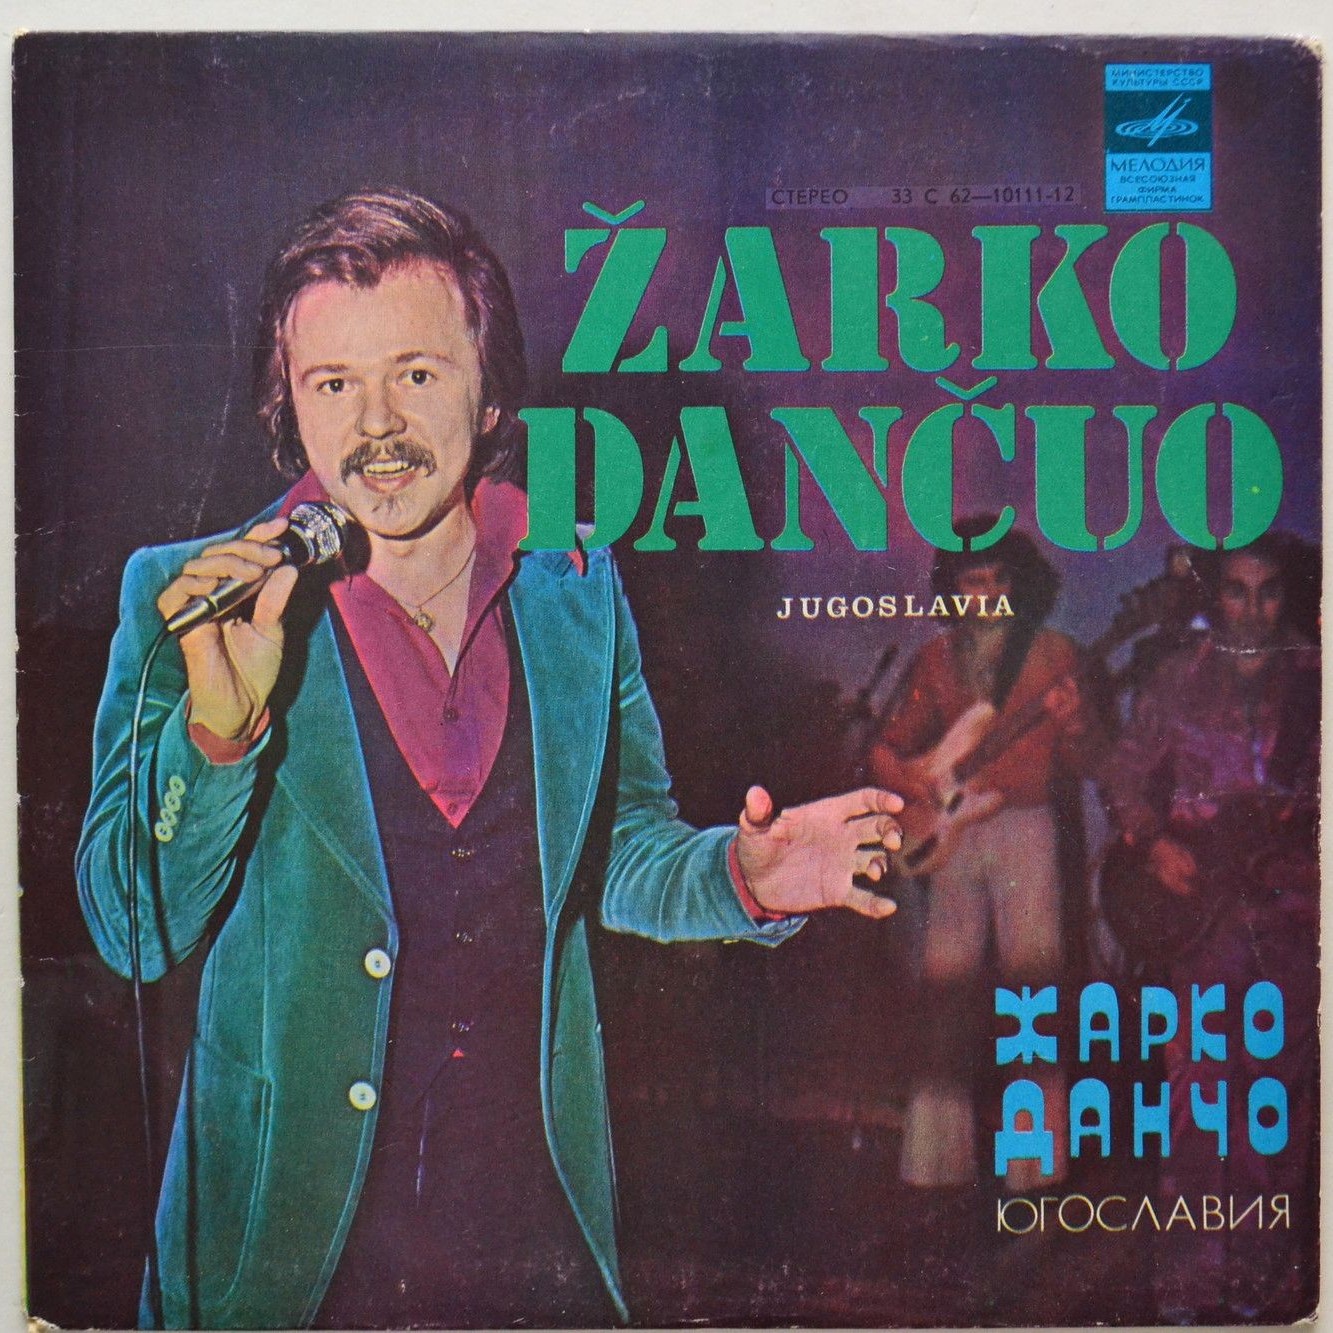 Жарко Данчо и группа "Jezgro" (Югославия)